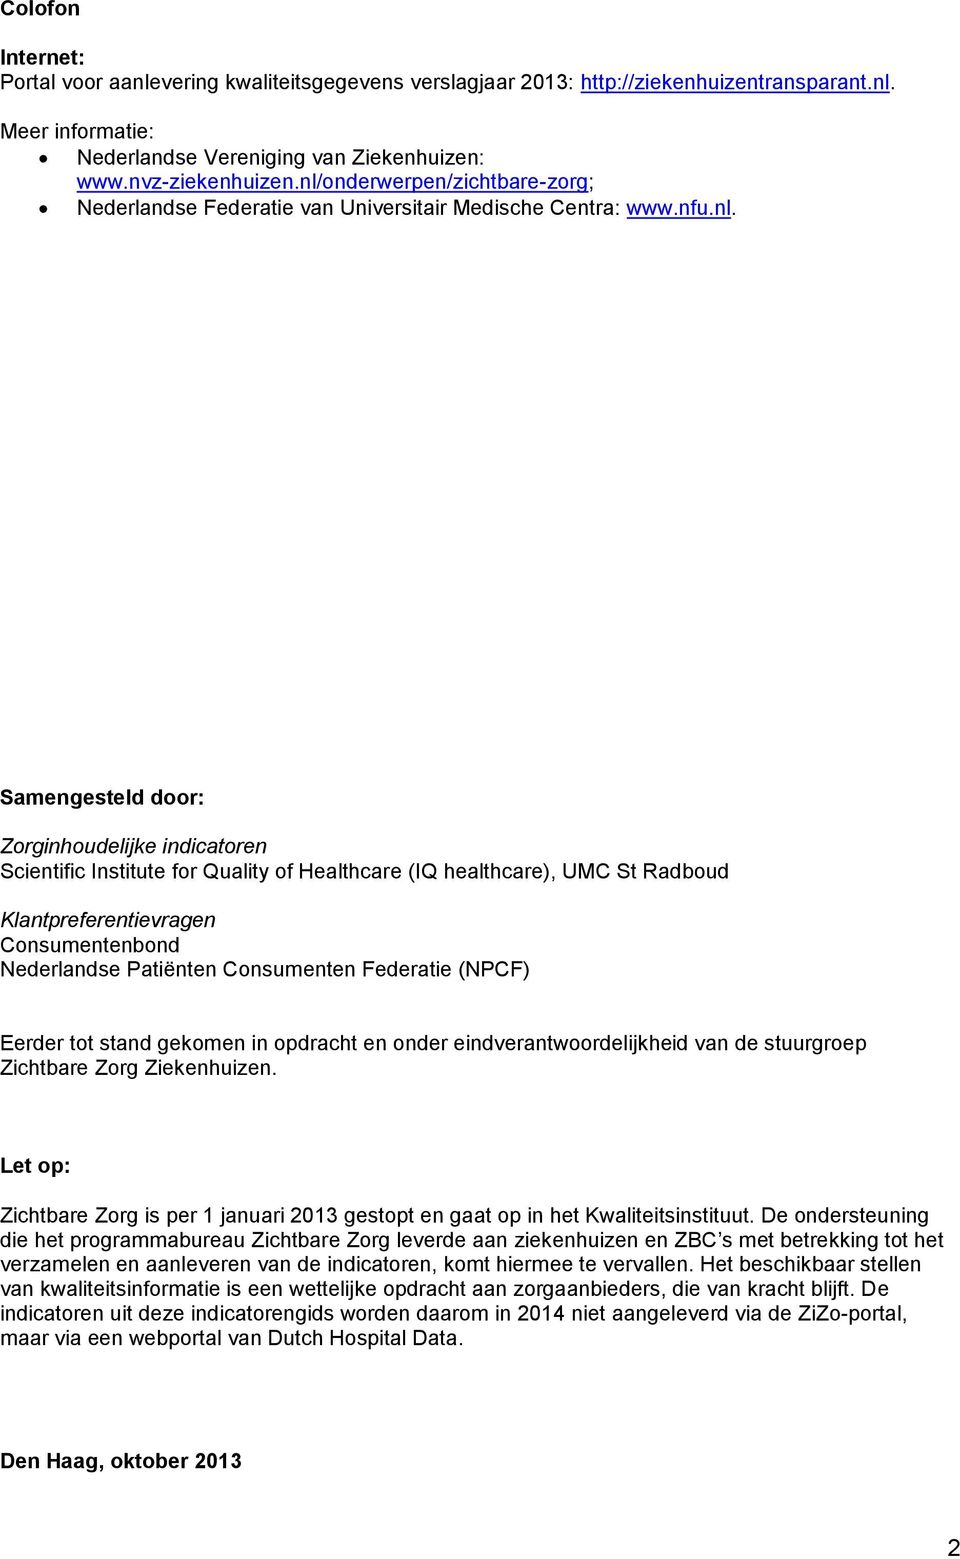 healthcare), UMC St Radboud Klantpreferentievragen Consumentenbond Nederlandse Patiënten Consumenten Federatie (NPCF) Eerder tot stand gekomen in opdracht en onder eindverantwoordelijkheid van de